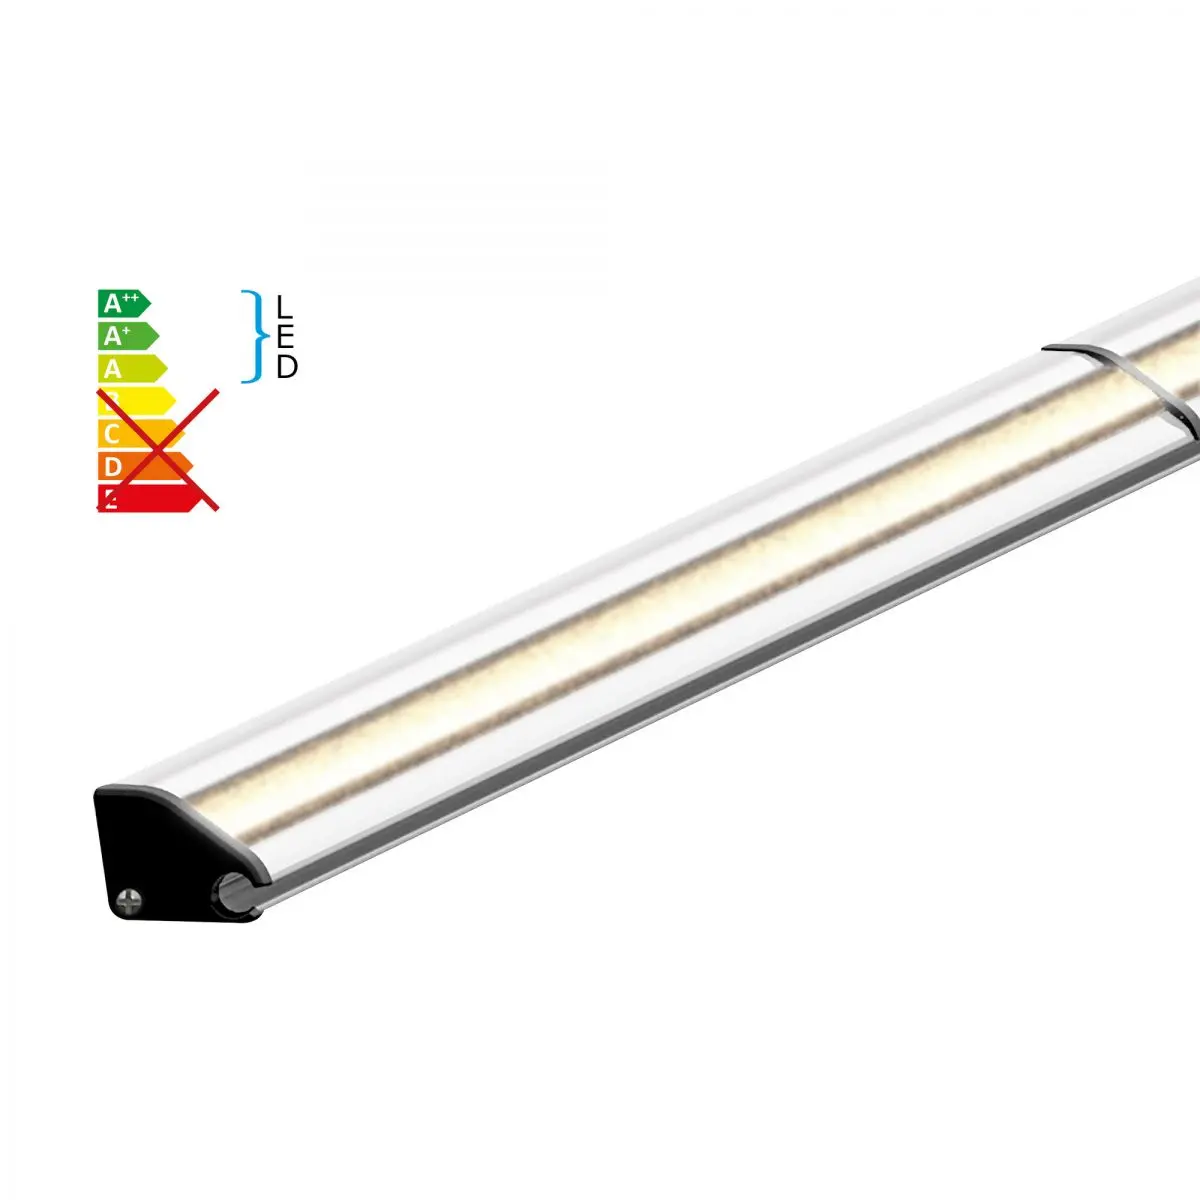 Benzi LED inclusiv profile din aluminiu pentru copertine Dometic seria 1, lungime 4 m